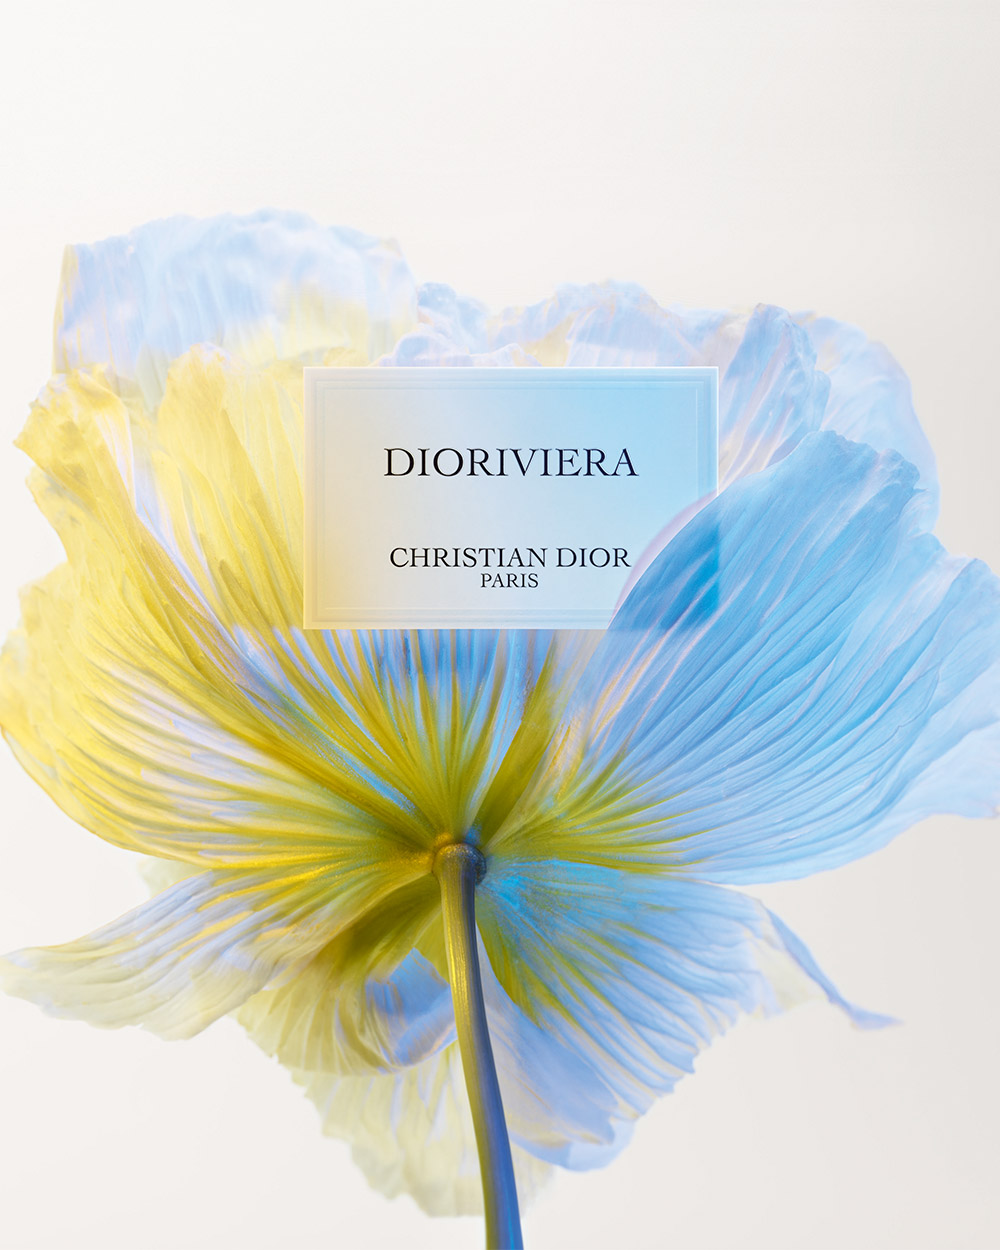 Dior Dioriviera: Francis Kurkdjian's First Dior Fragrance